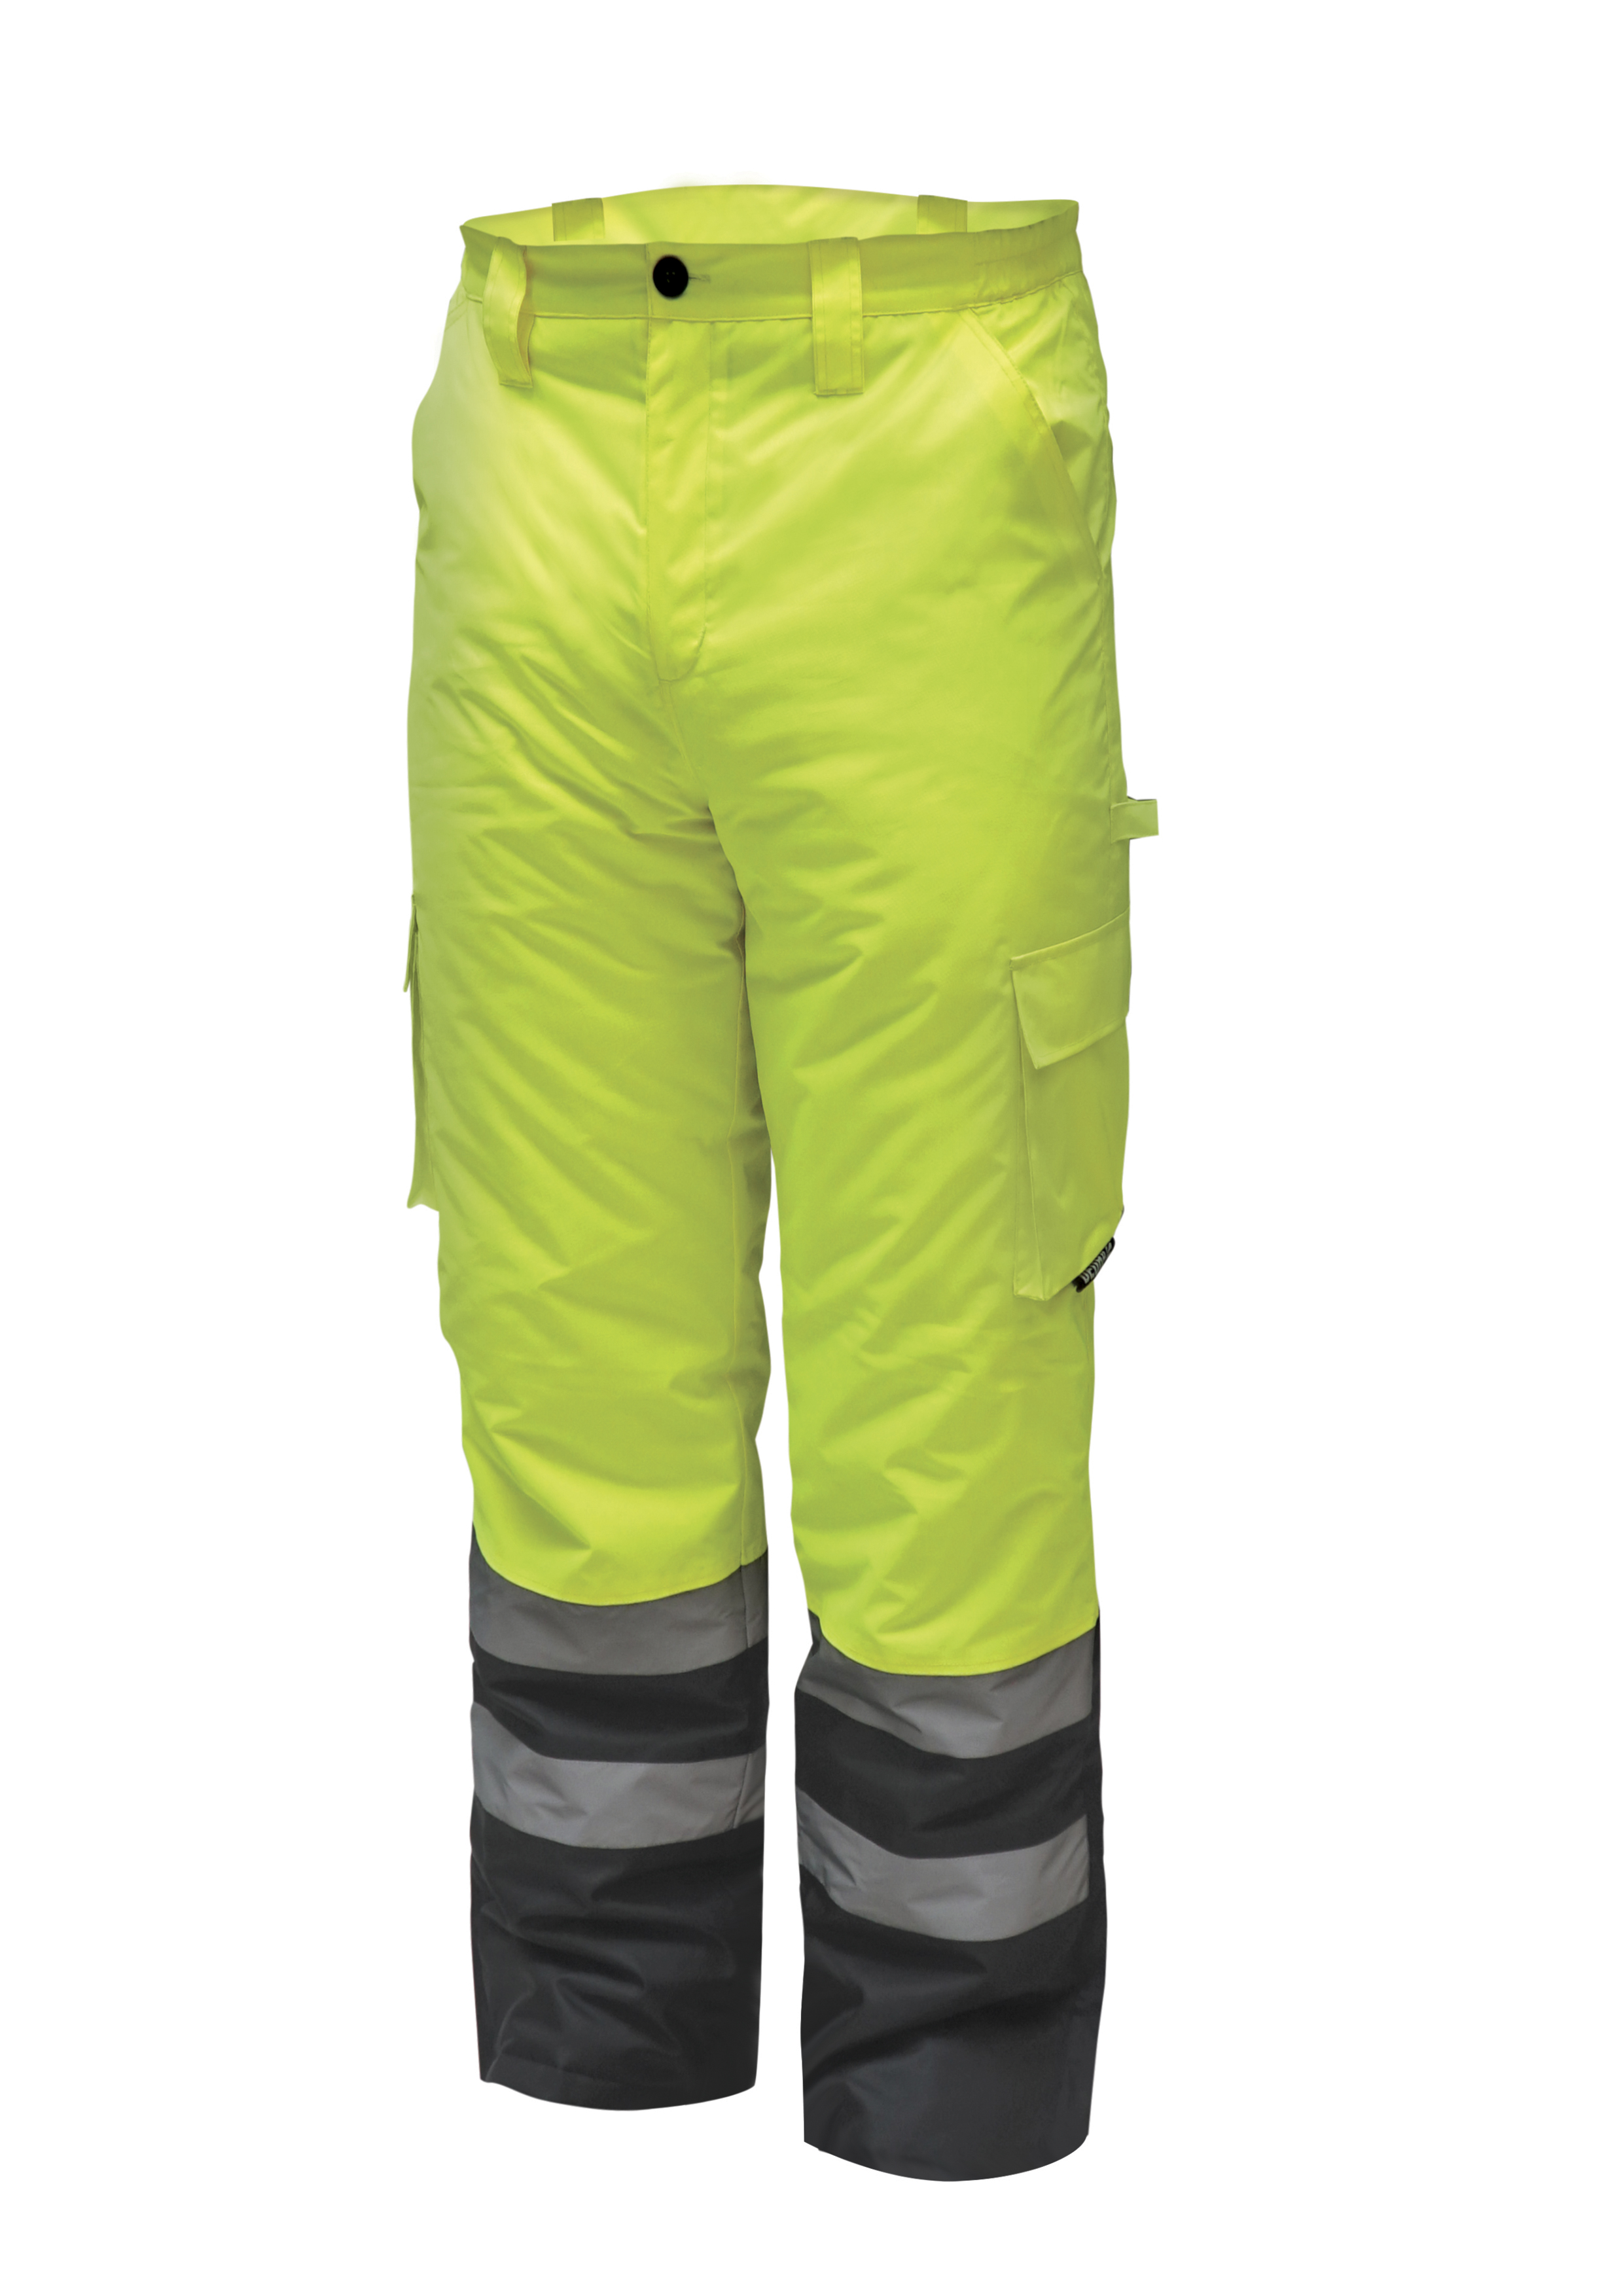 Reflexní zateplené kalhoty vel. S, žluté DEDRA BH80SP1-S + Dárek, servis bez starostí v hodnotě 300Kč